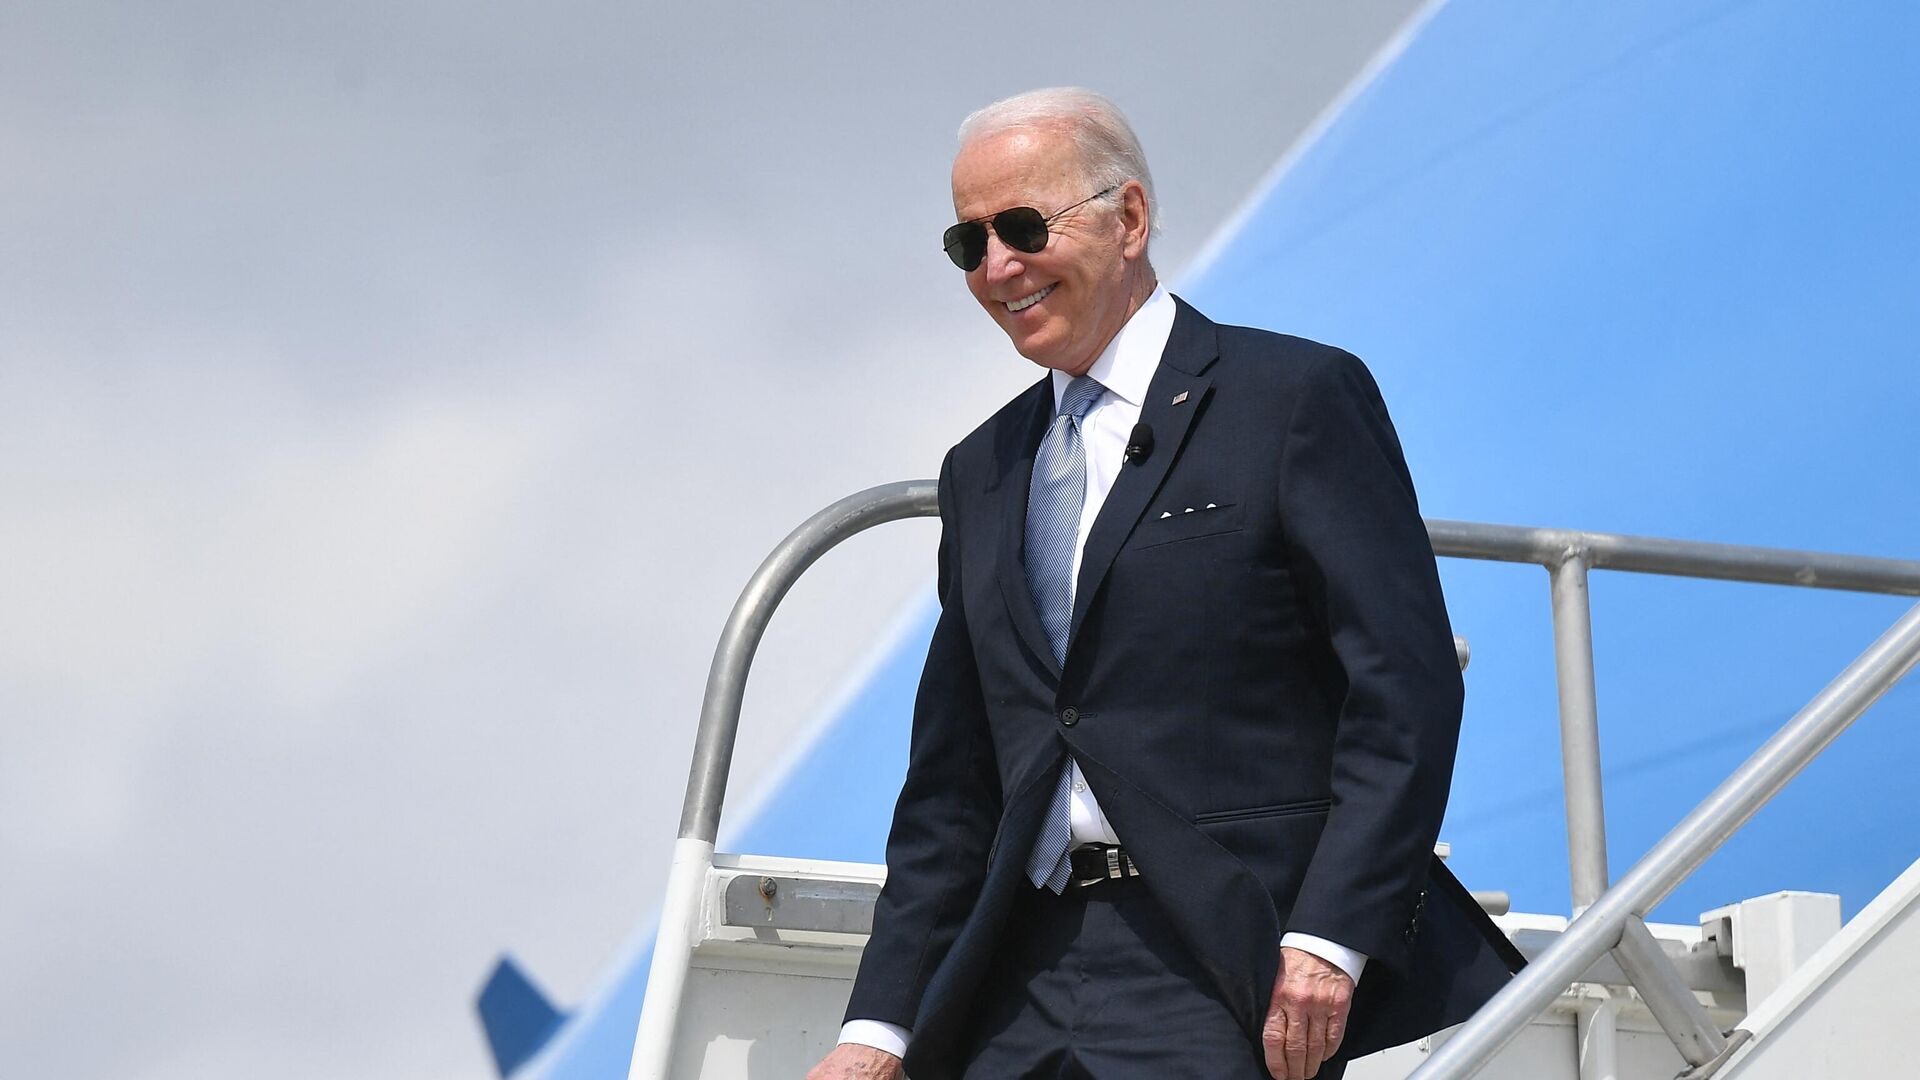 US President Joe Biden steps off Air Force One upon arrival at Portland International Airport in Portland, Oregon on April 21, 2022. (Photo by MANDEL NGAN / AFP) - Sputnik International, 1920, 14.05.2022